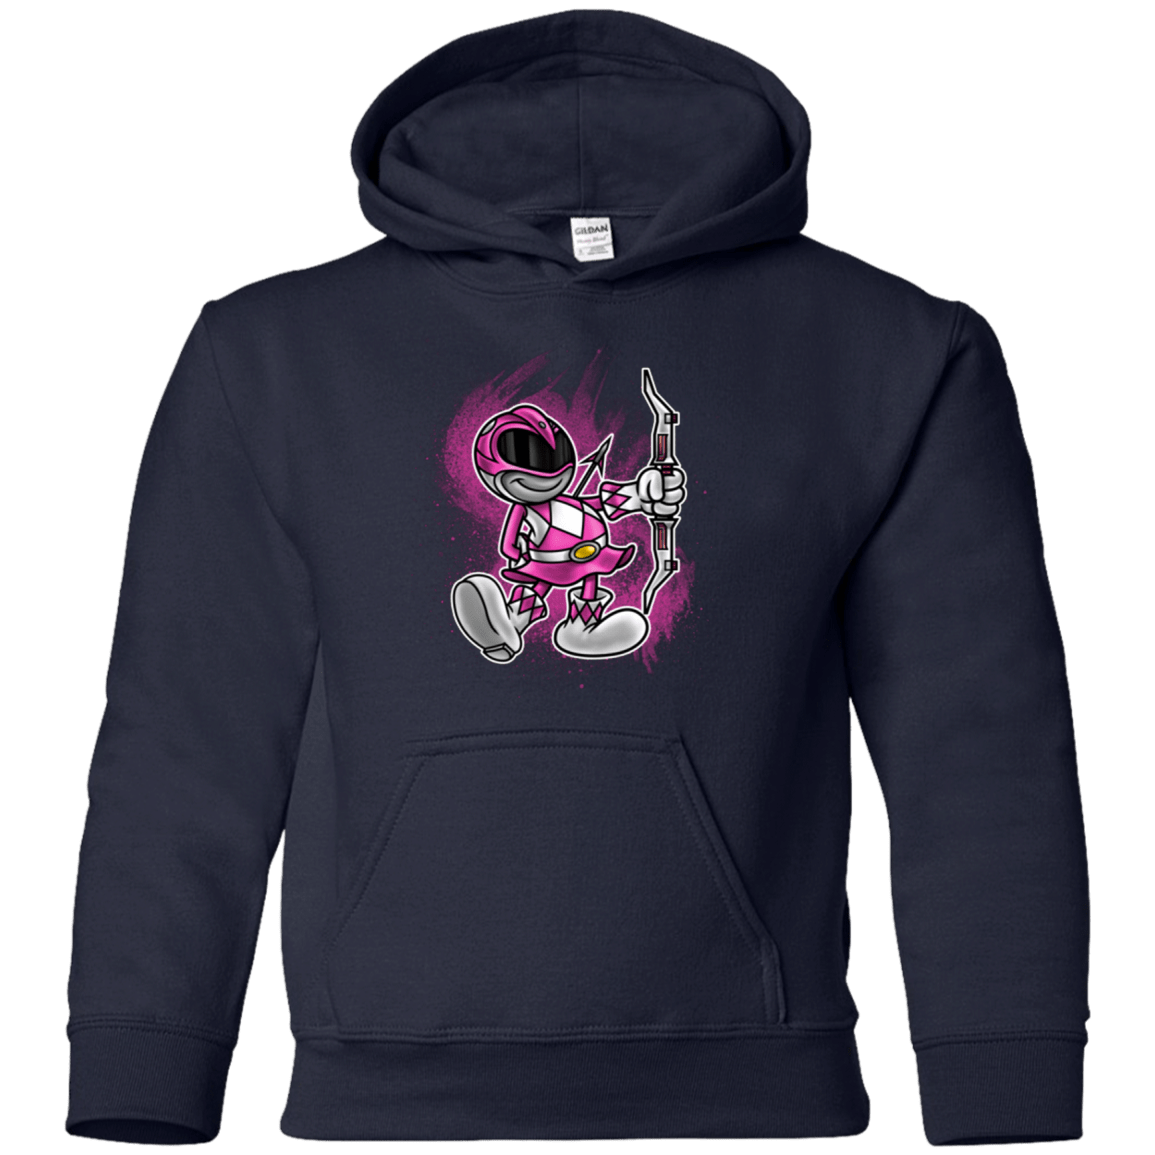 Sweatshirts Navy / YS Pink Ranger Artwork Youth Hoodie